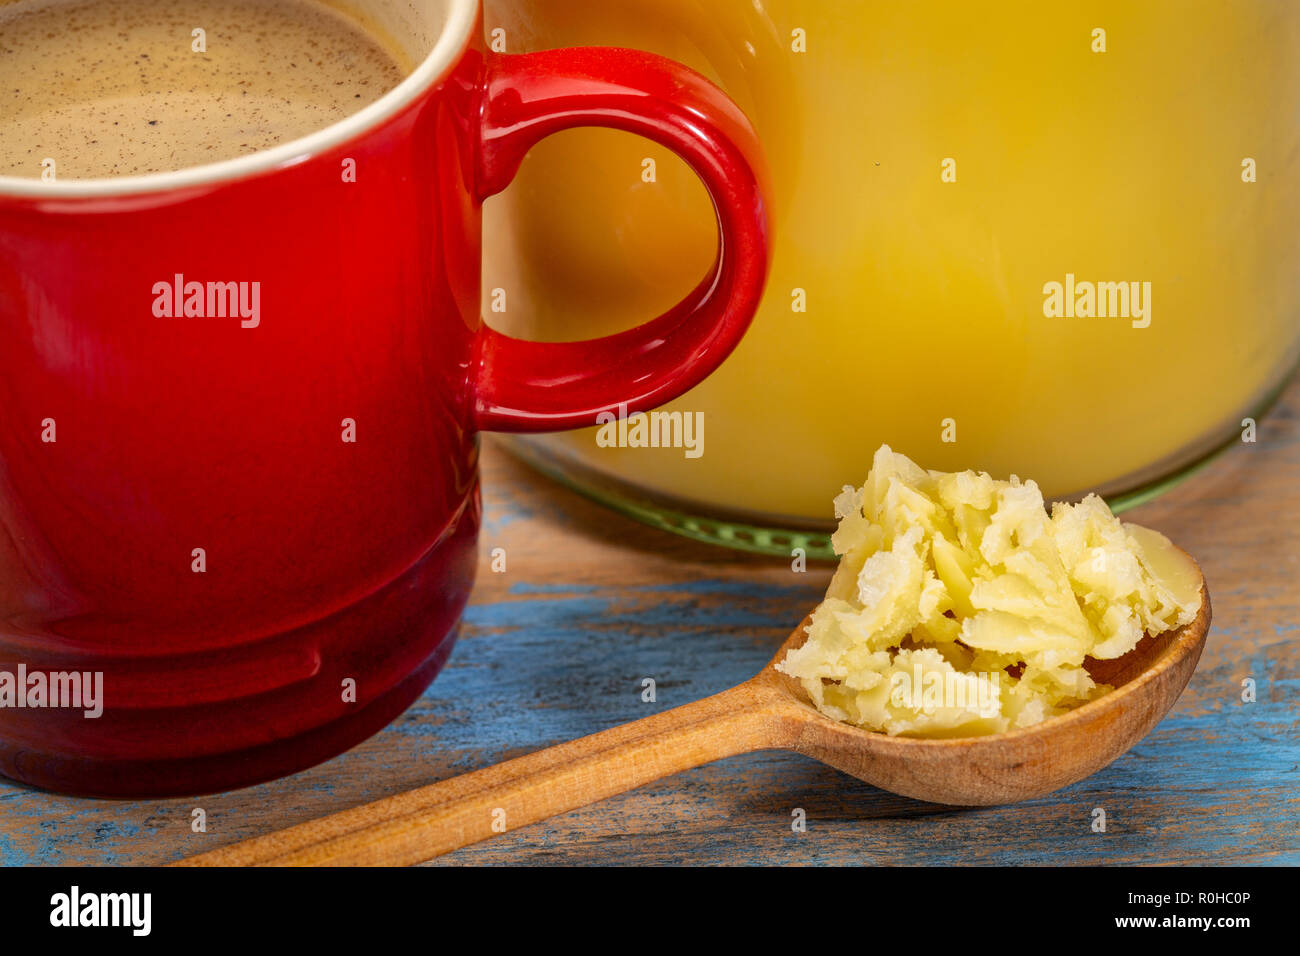 Tasse de café gras avec le ghee (beurre clarifié) - régime cétogène concept Banque D'Images